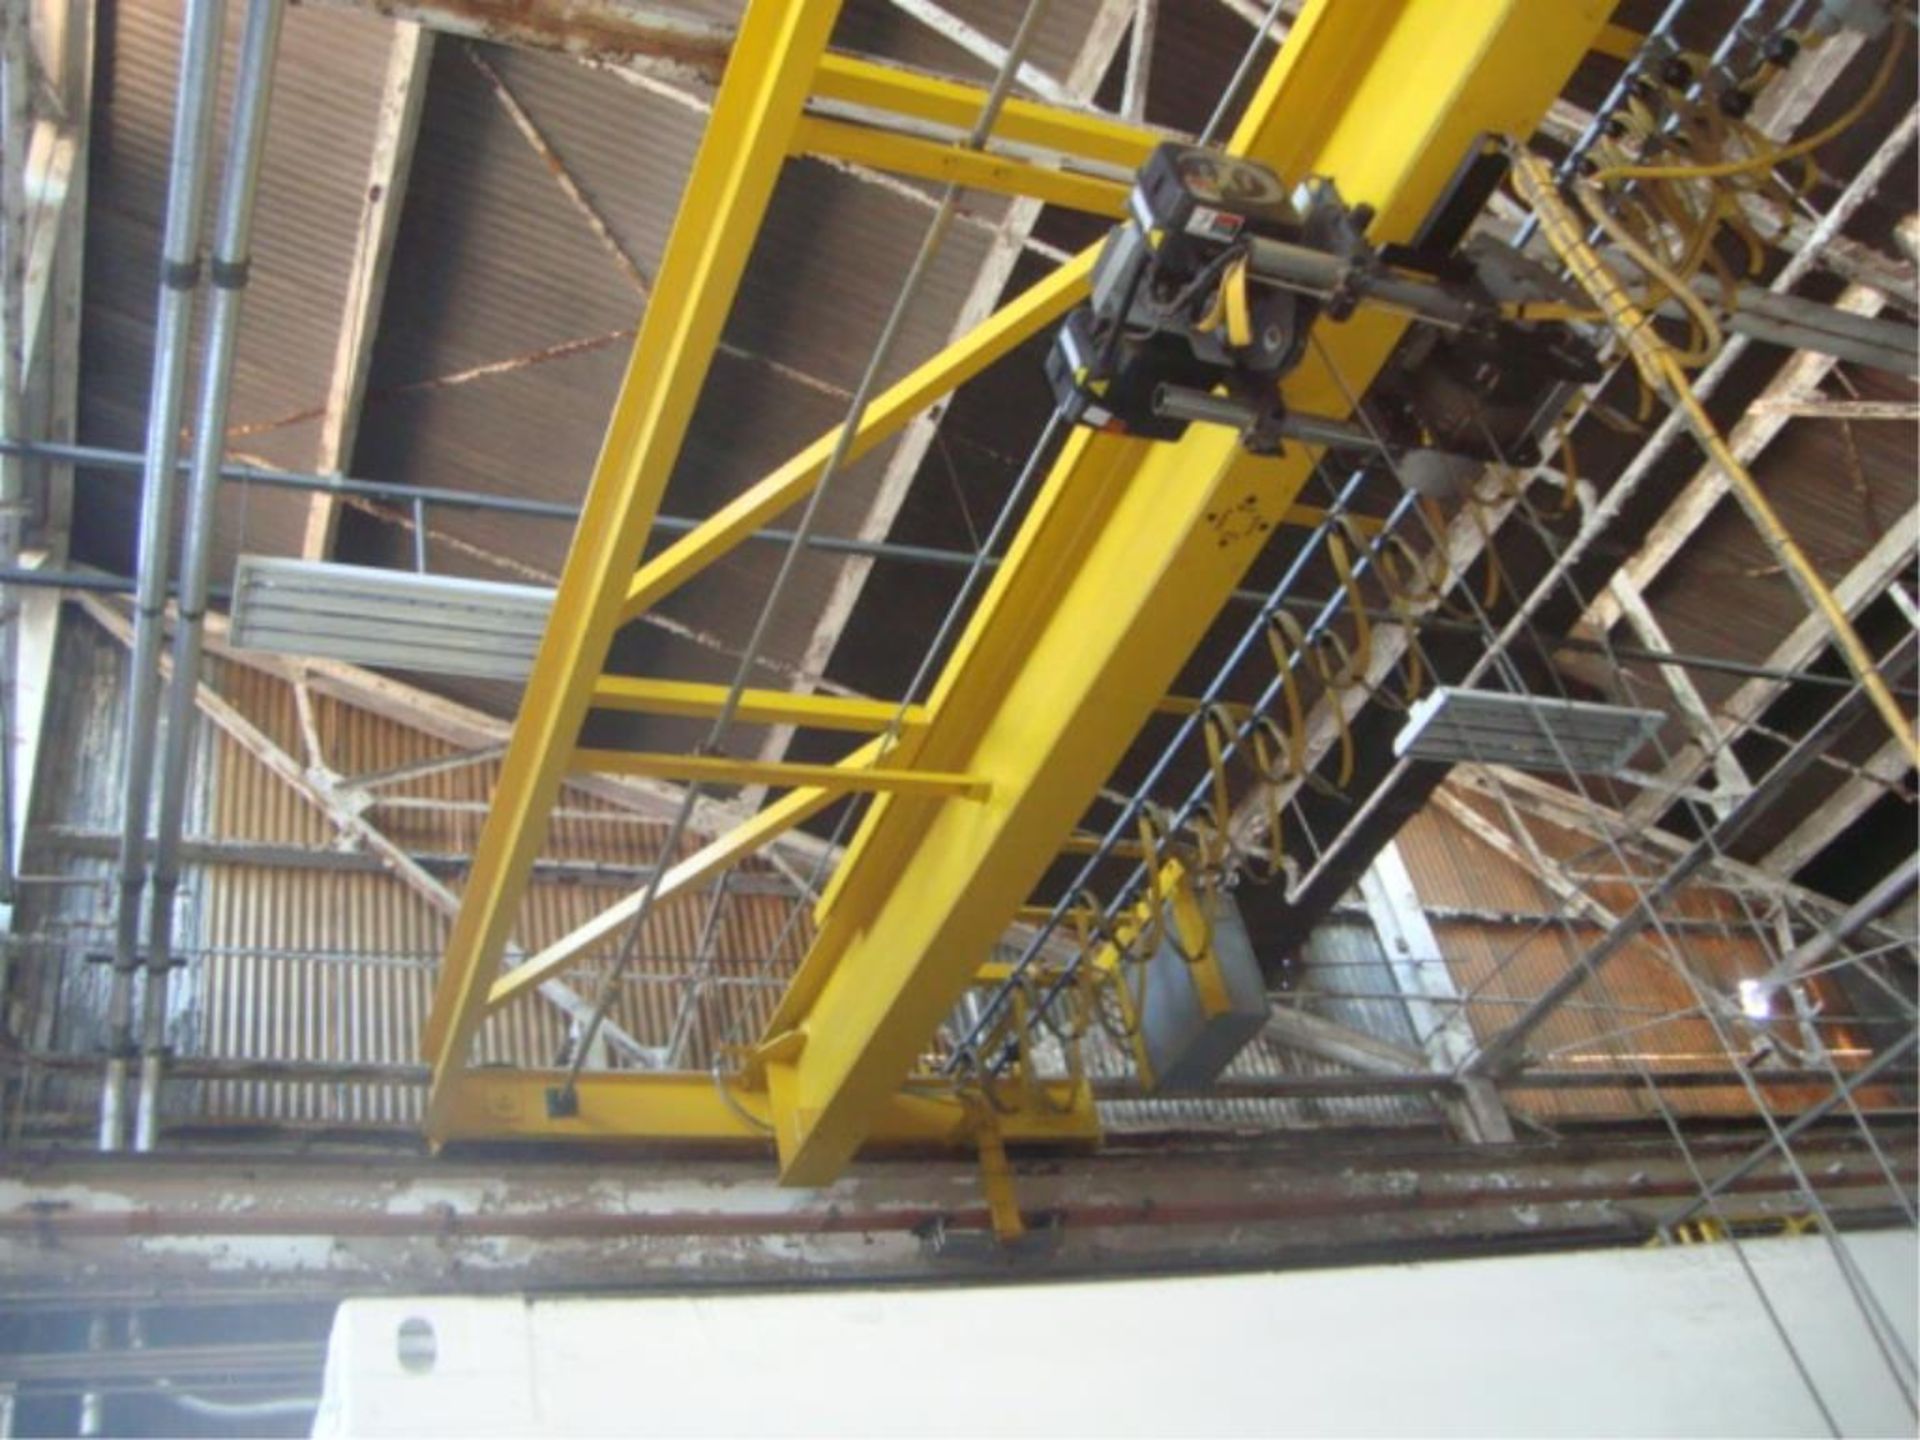 5-Ton Capacity Overhead Bridge Crane - Image 3 of 9